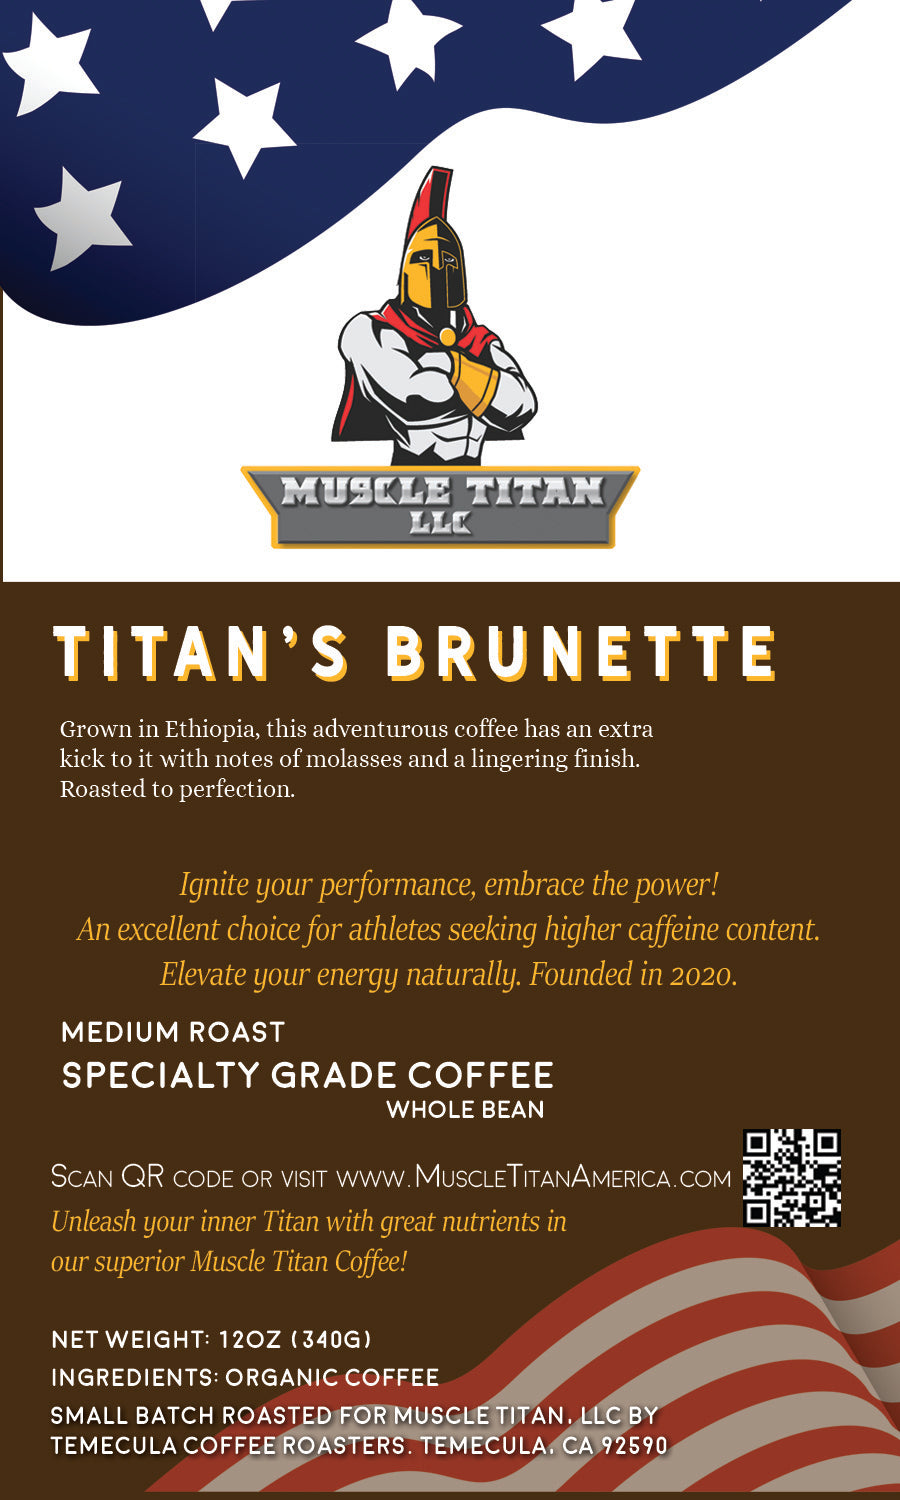 Titan's Brunette